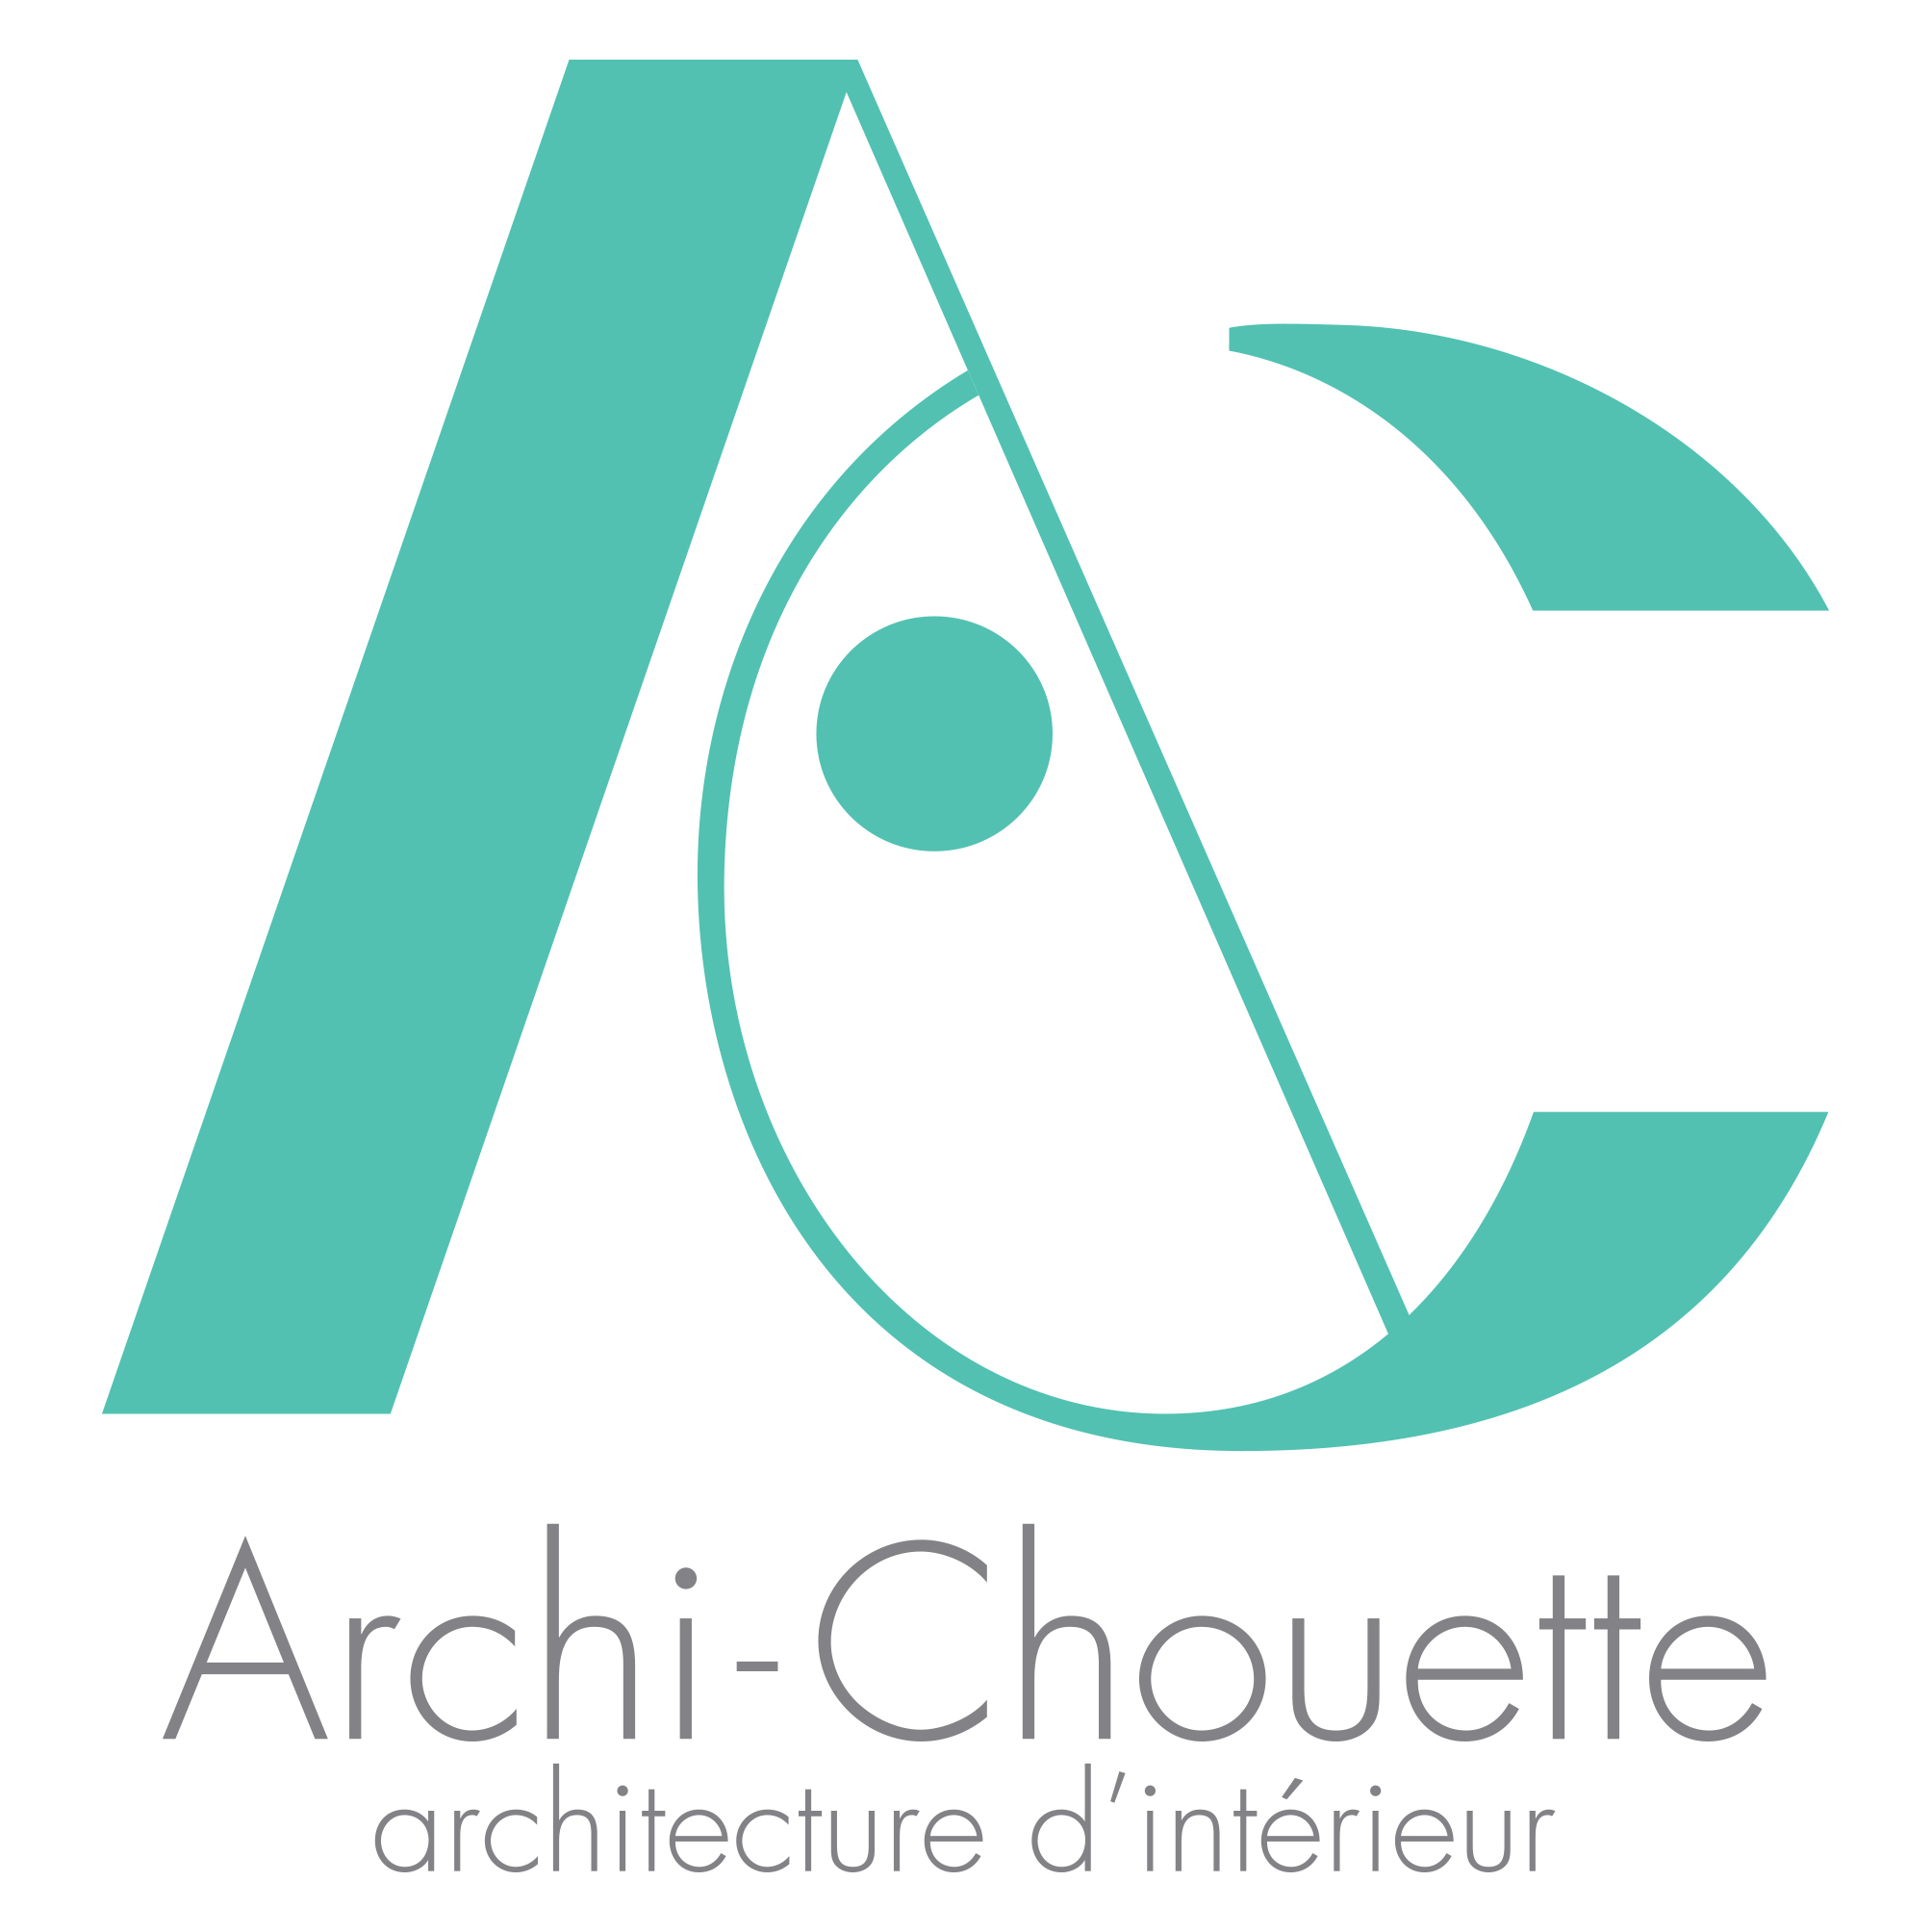 Archi-Chouette